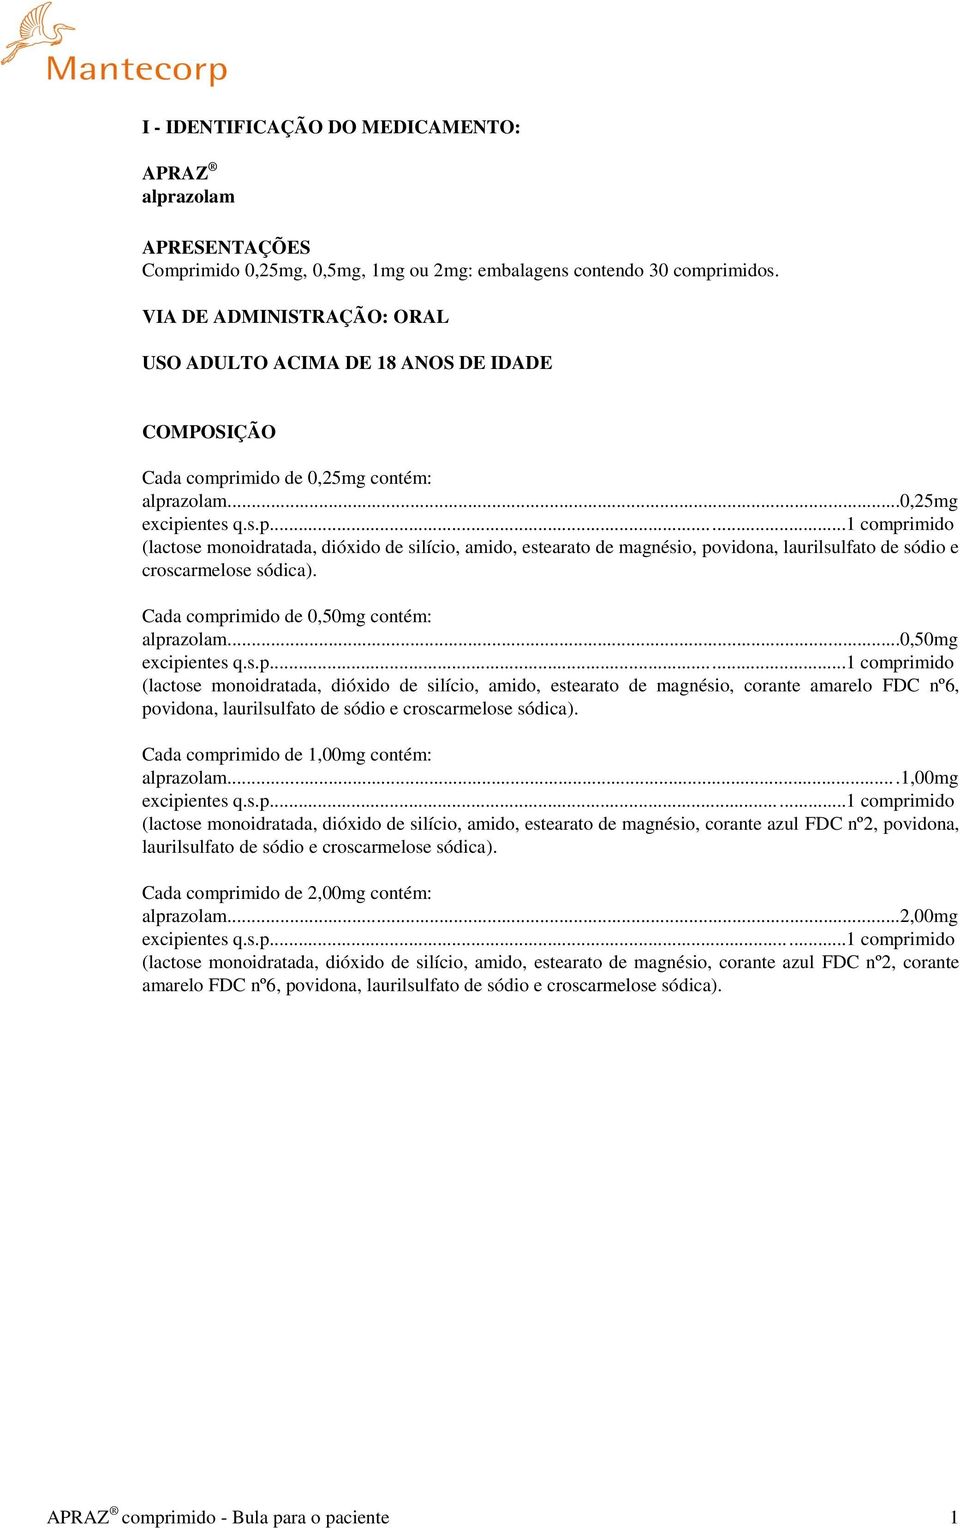 imido de 0,25mg contém: alprazolam...0,25mg excipientes q.s.p...1 comprimido (lactose monoidratada, dióxido de silício, amido, estearato de magnésio, povidona, laurilsulfato de sódio e croscarmelose sódica).